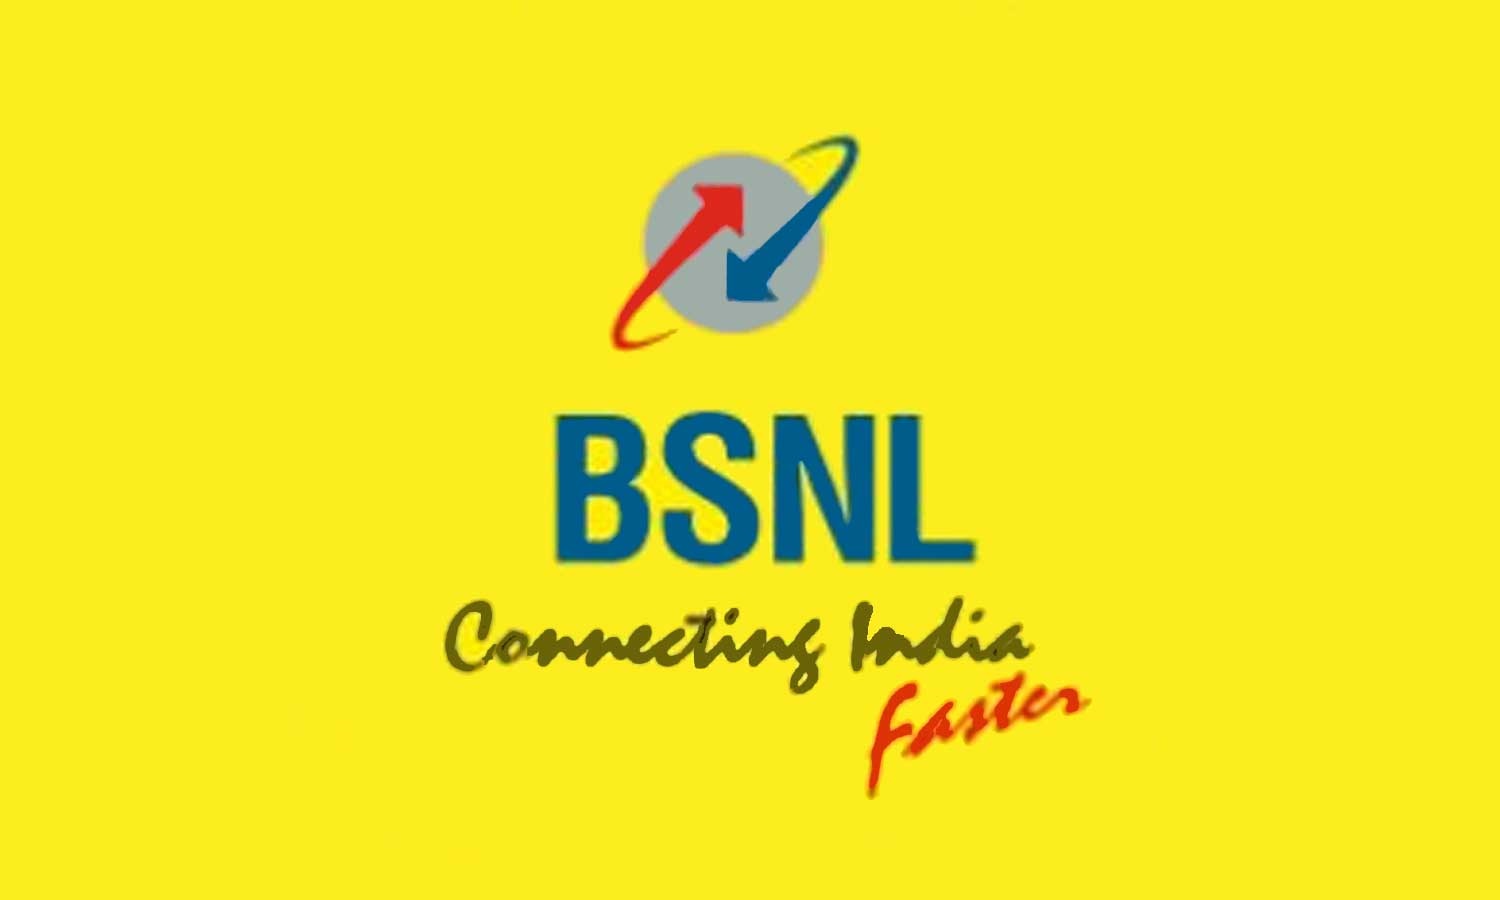 BSNL offer